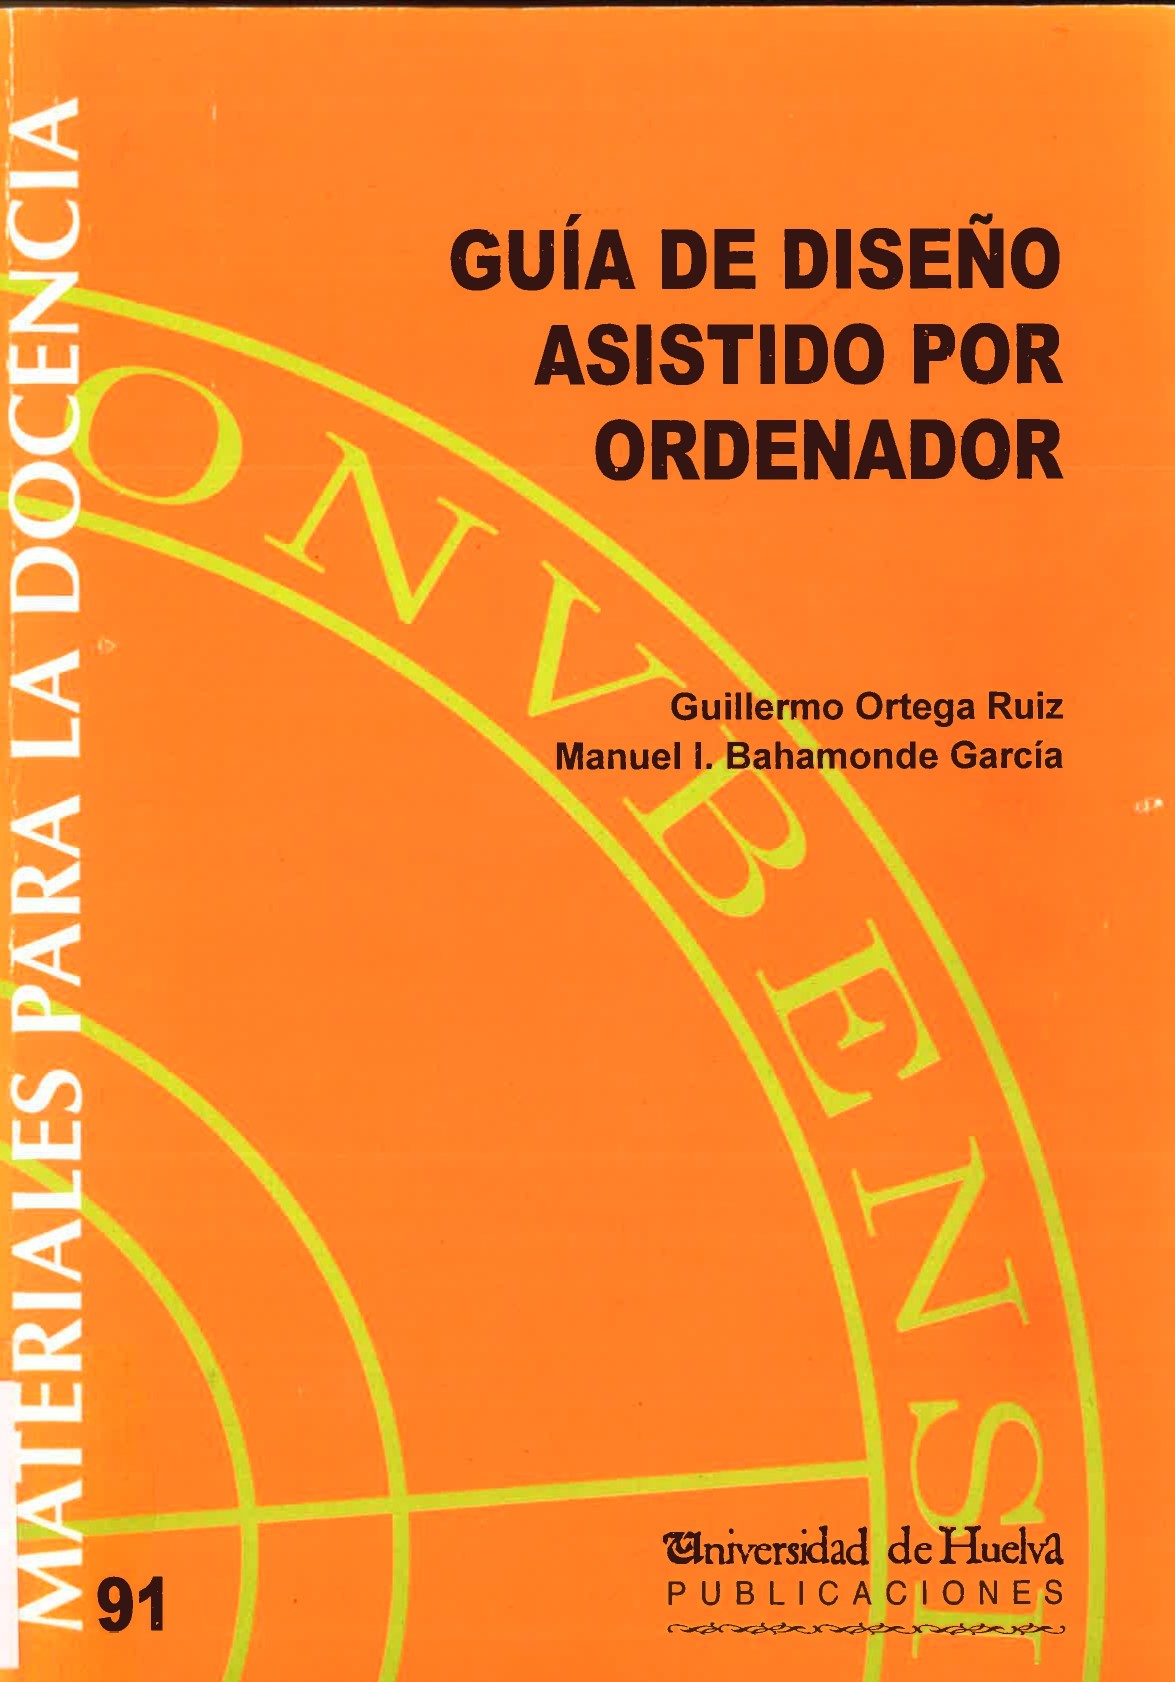 Imagen de portada del libro Guía de diseño asistido por ordenador